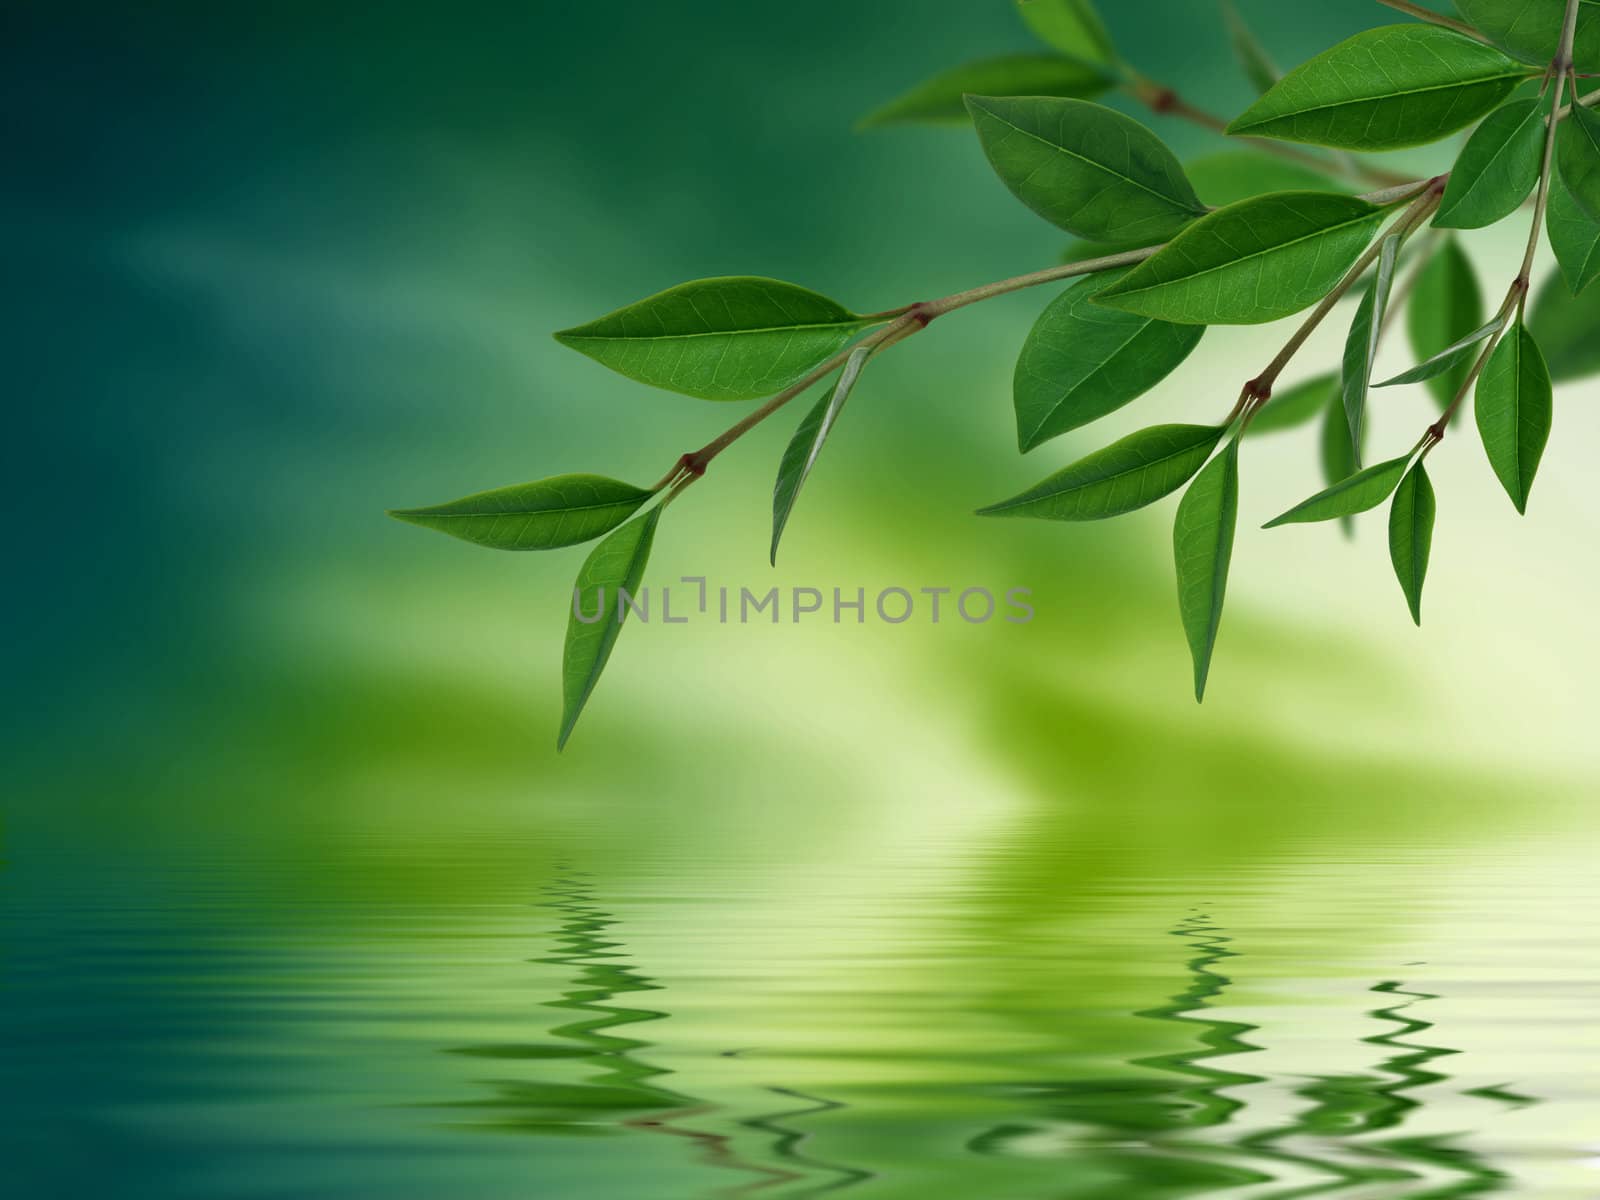 Leaves reflecting in water by kbuntu